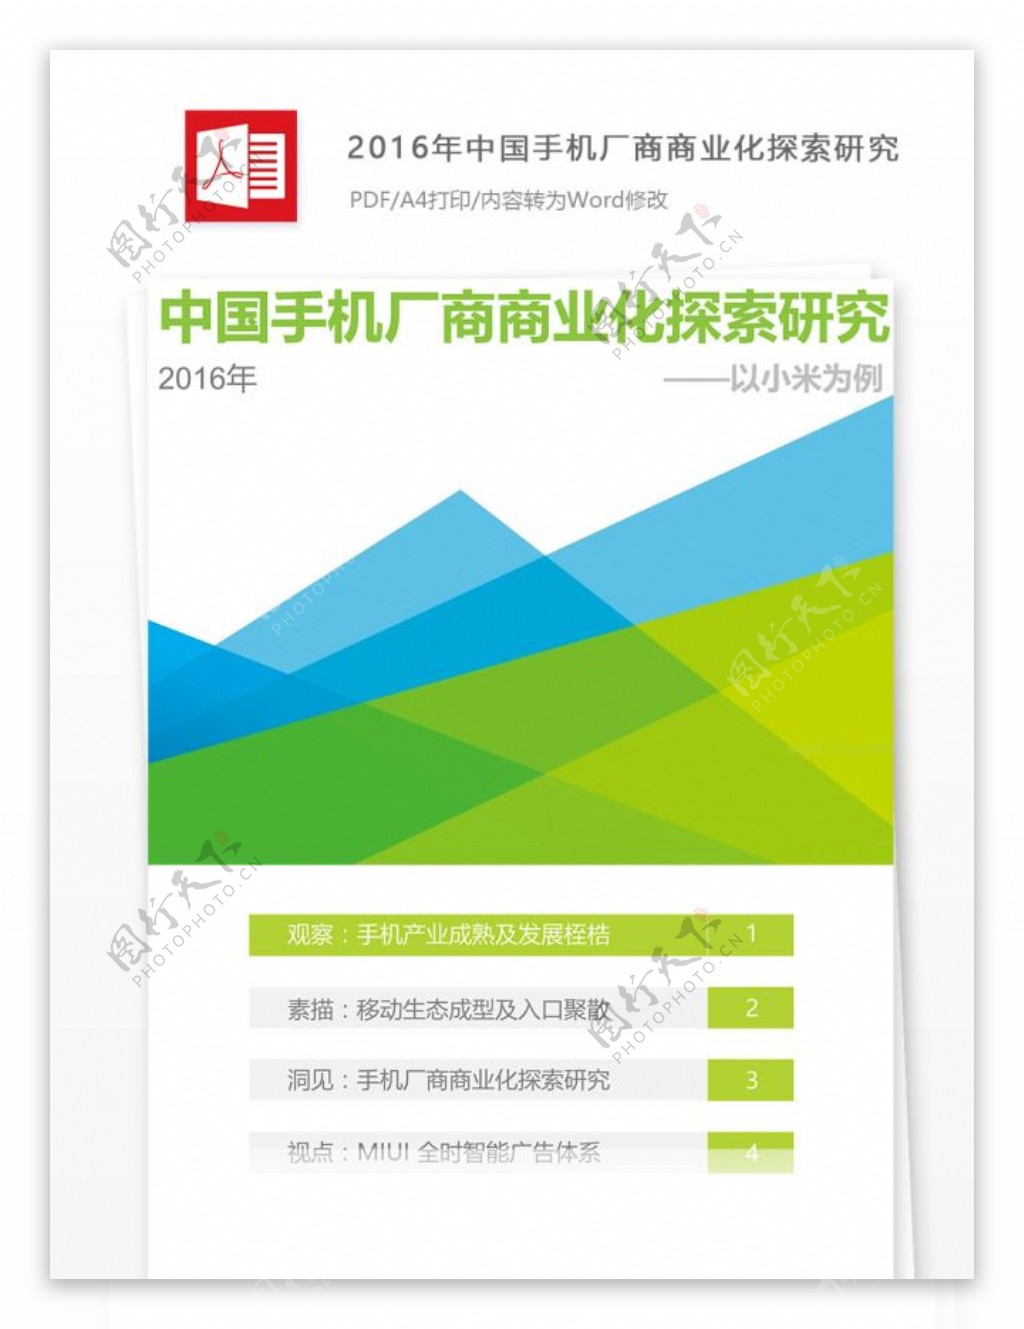 2016年中国手机厂商商业化探索研究